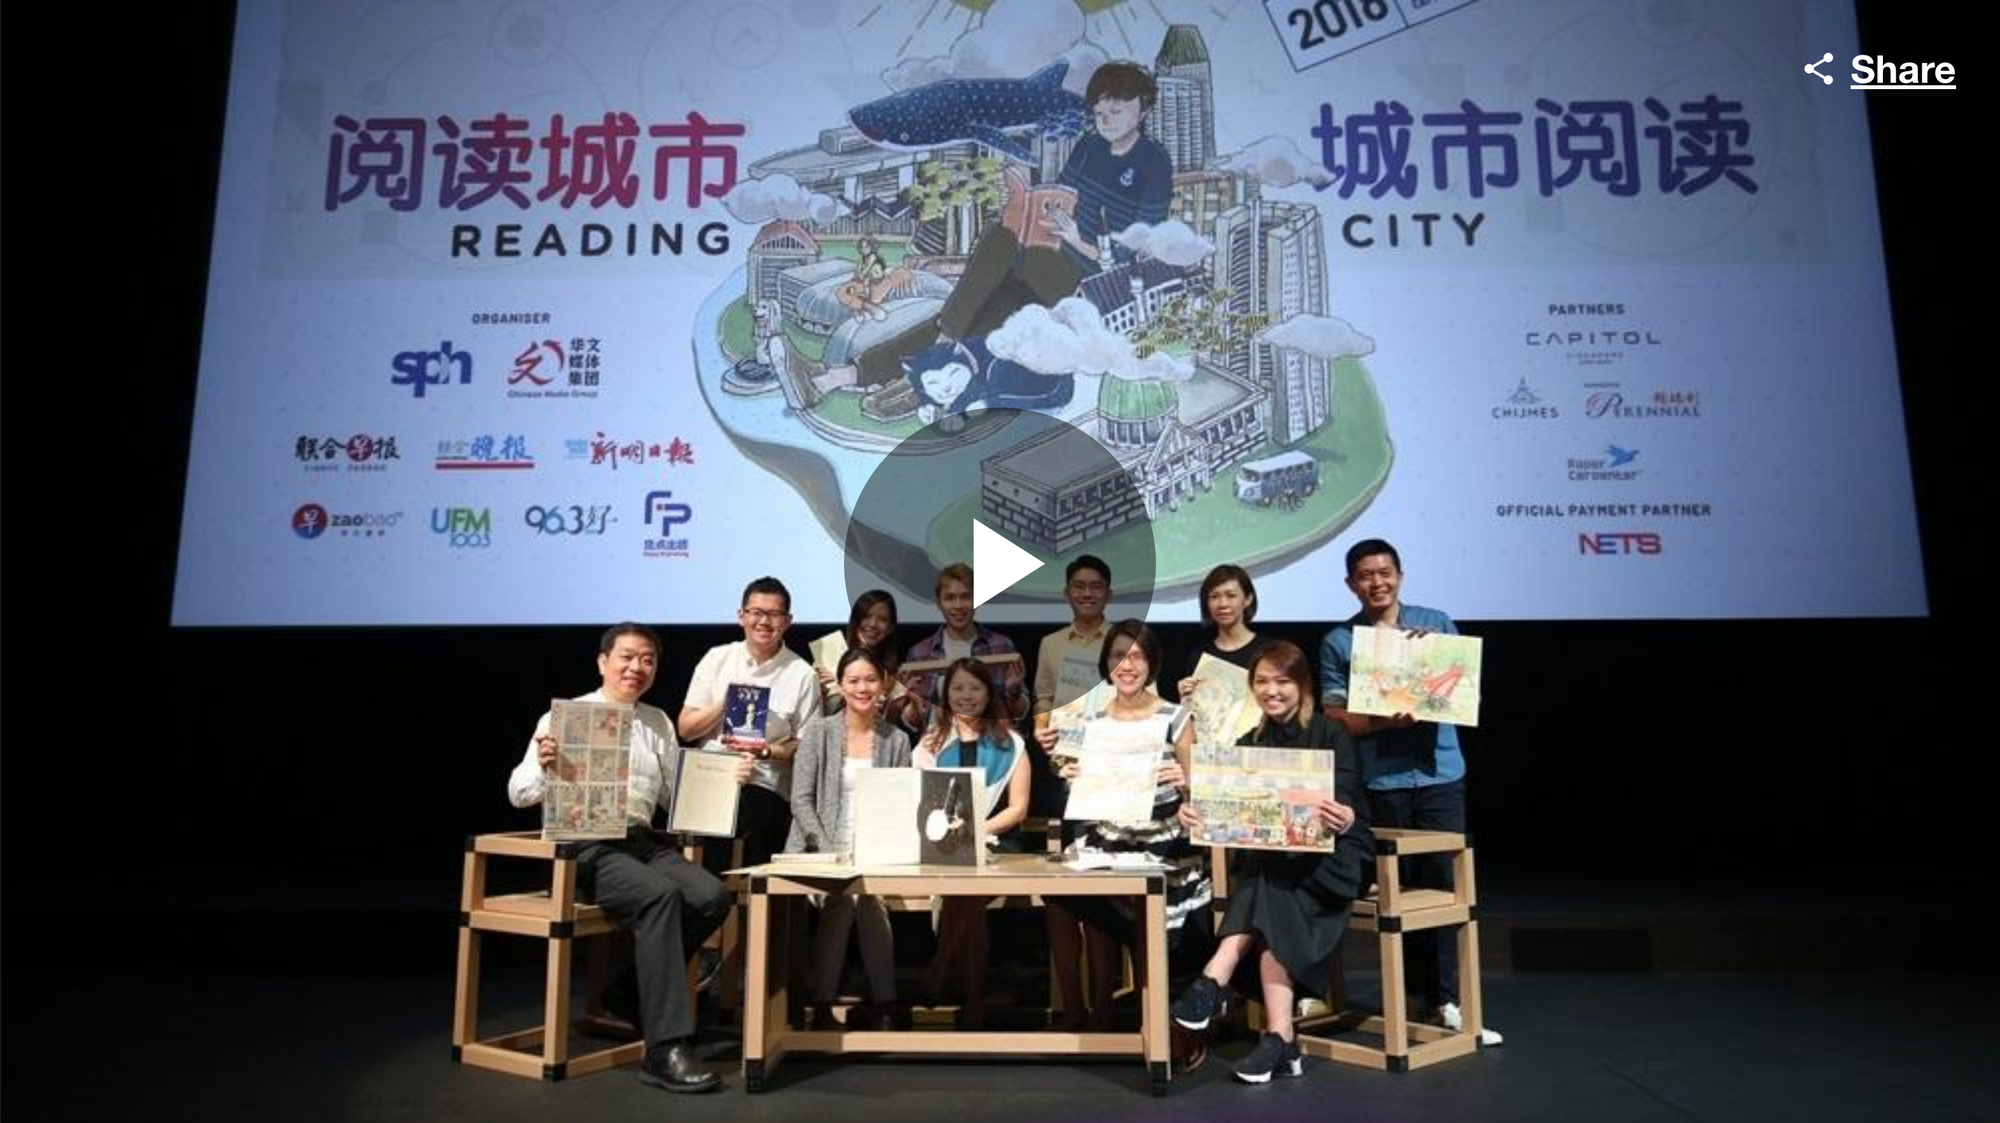 新加坡书展首次在历史建筑举行